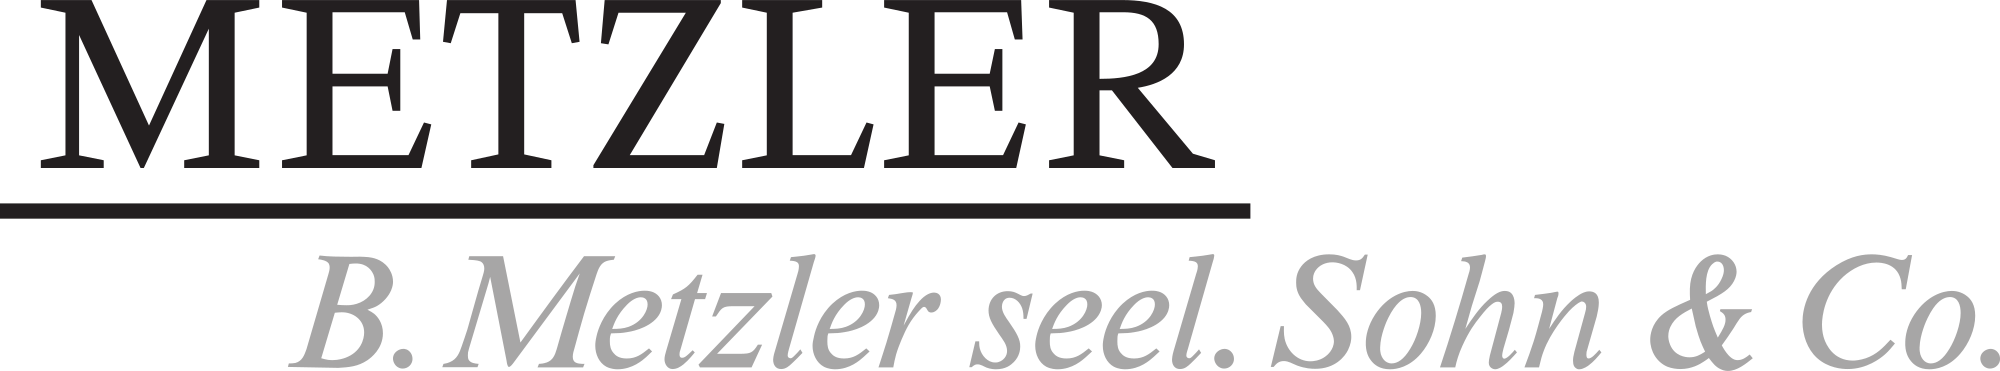 logo-metzler-2018-07